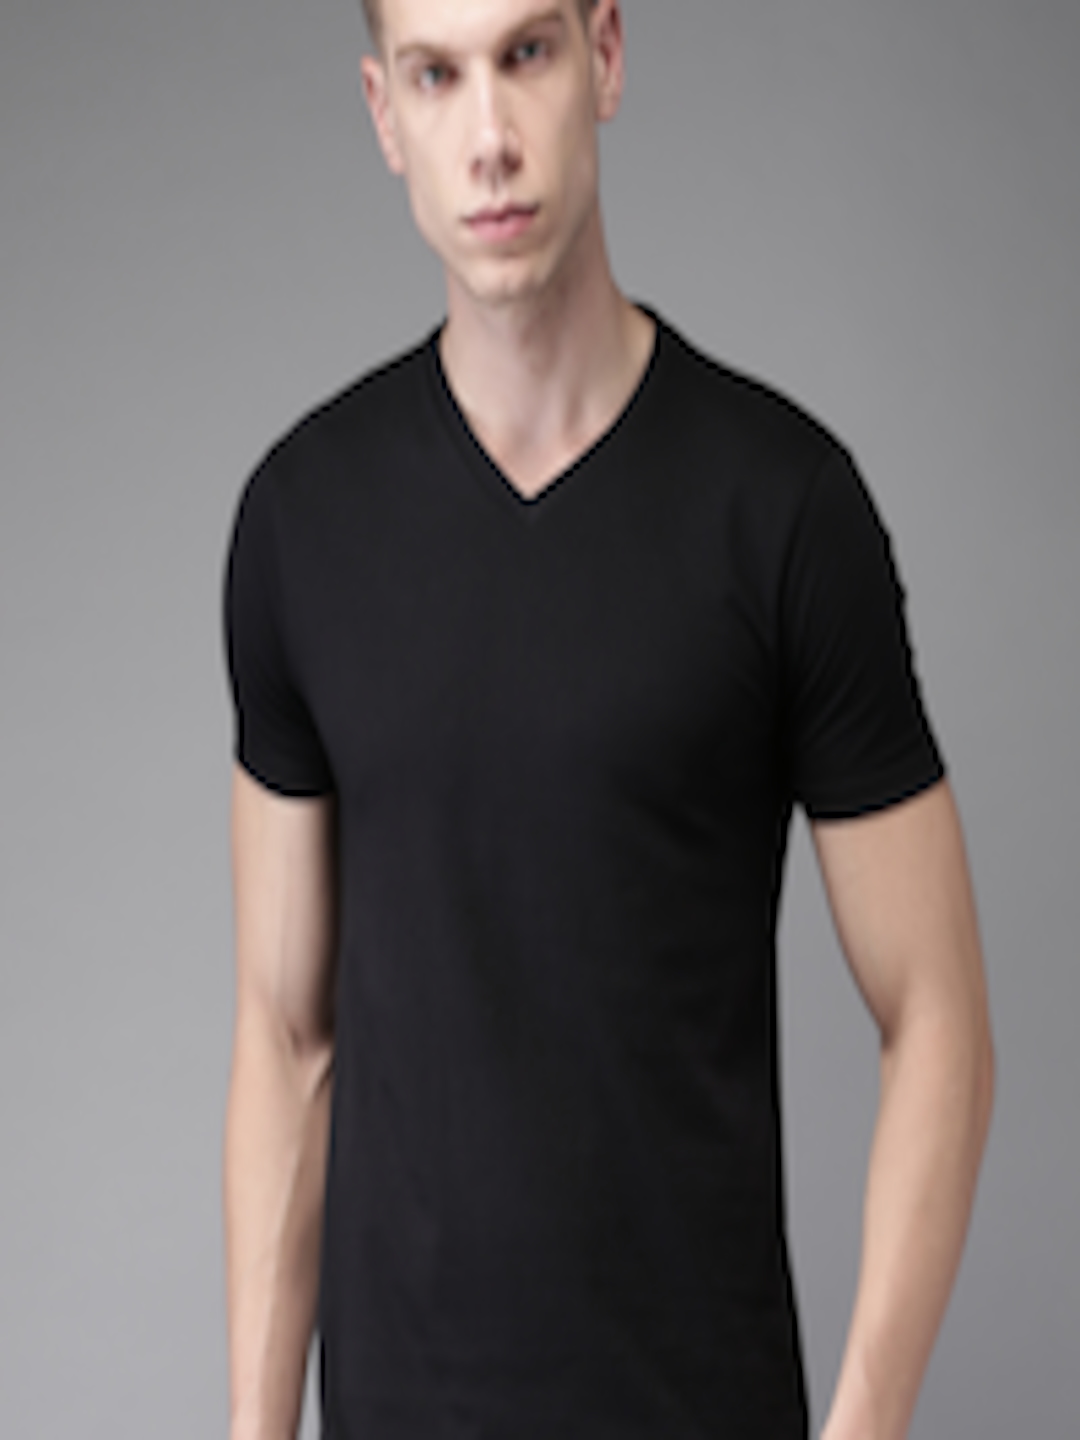 Buy HERE&NOW Men Black Solid V Neck T Shirt - Tshirts for Men 1986182 ...